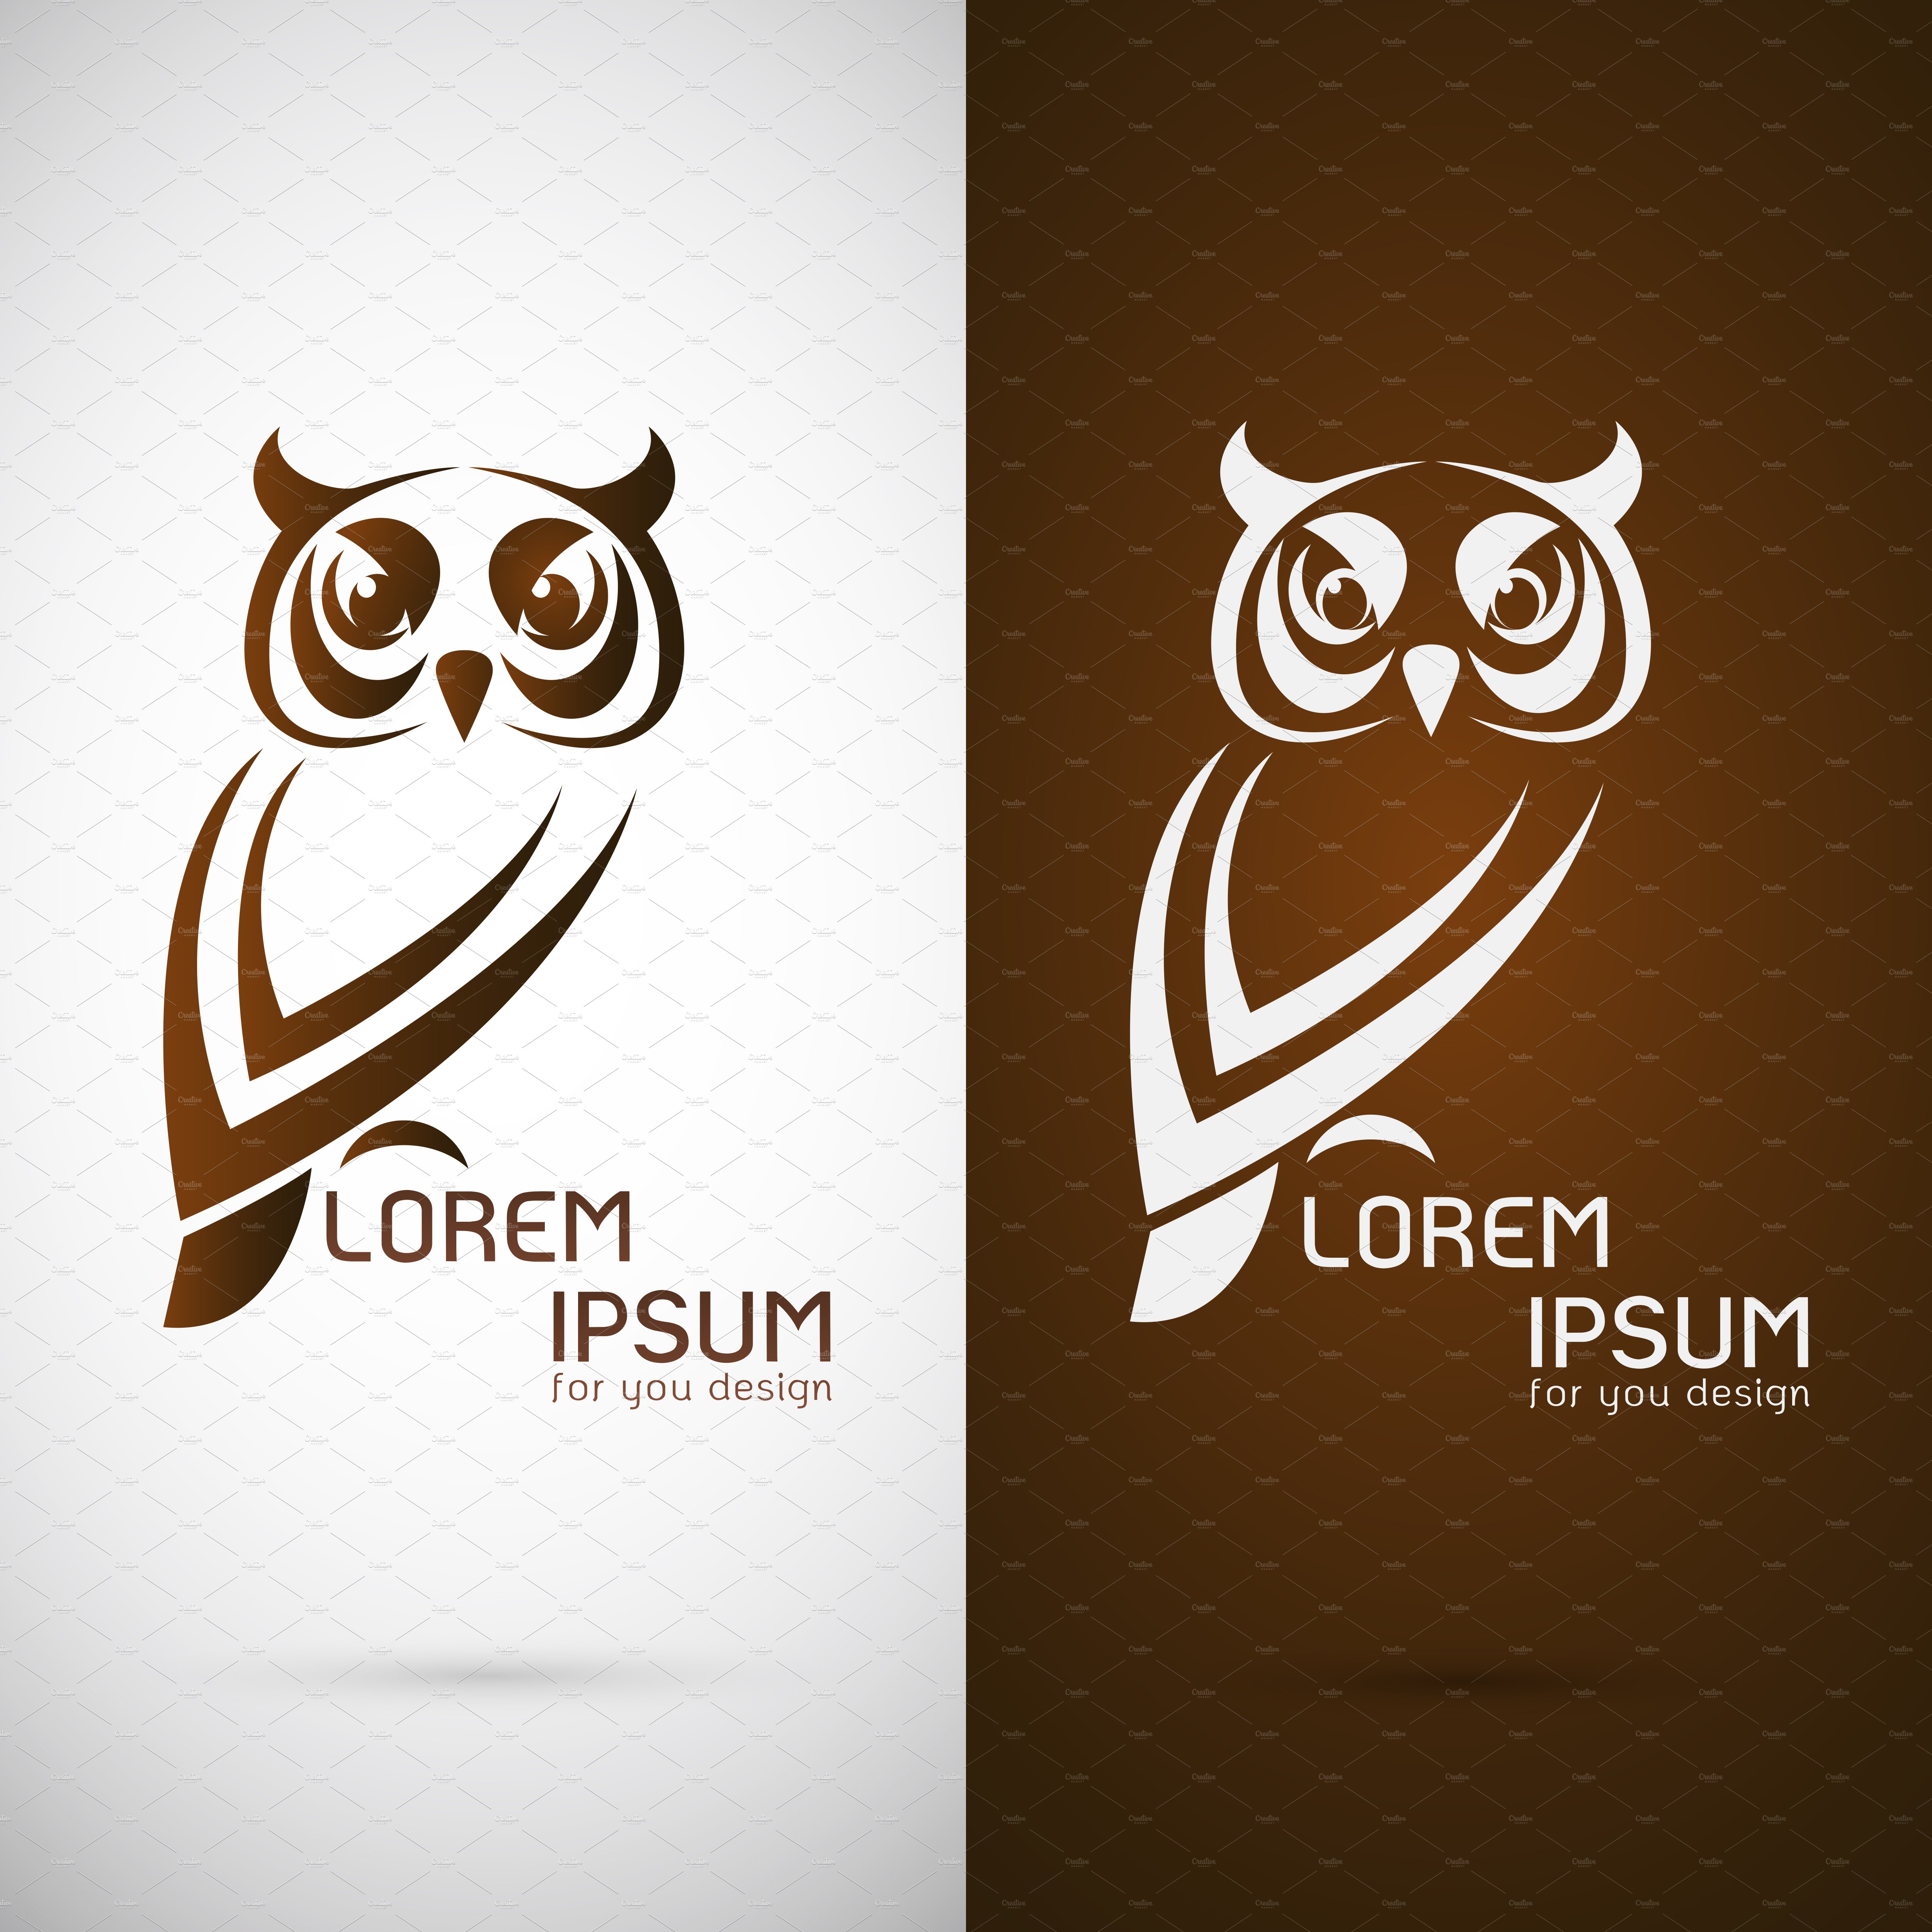 Owl design , logo, symbol cover image.